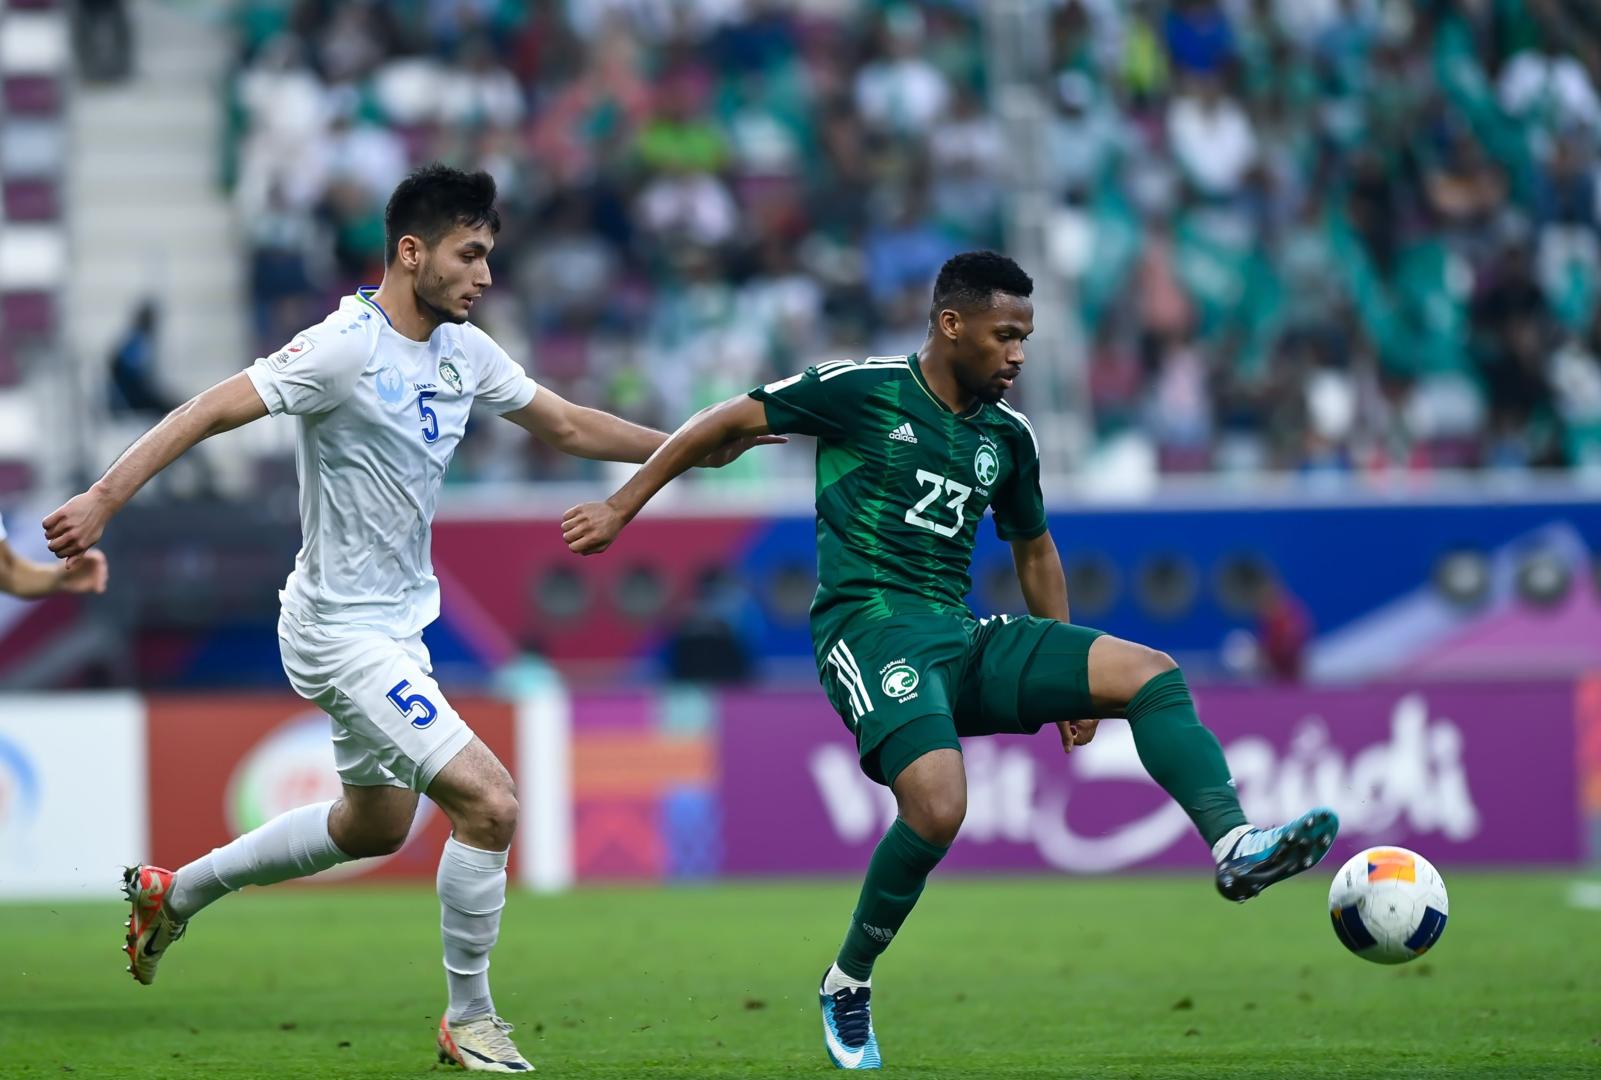 הקבוצה הירוקה יוצאת מ-U-23 Asian Cup לאחר הפסד על ידי אוזבקיסטן ברבע הגמר